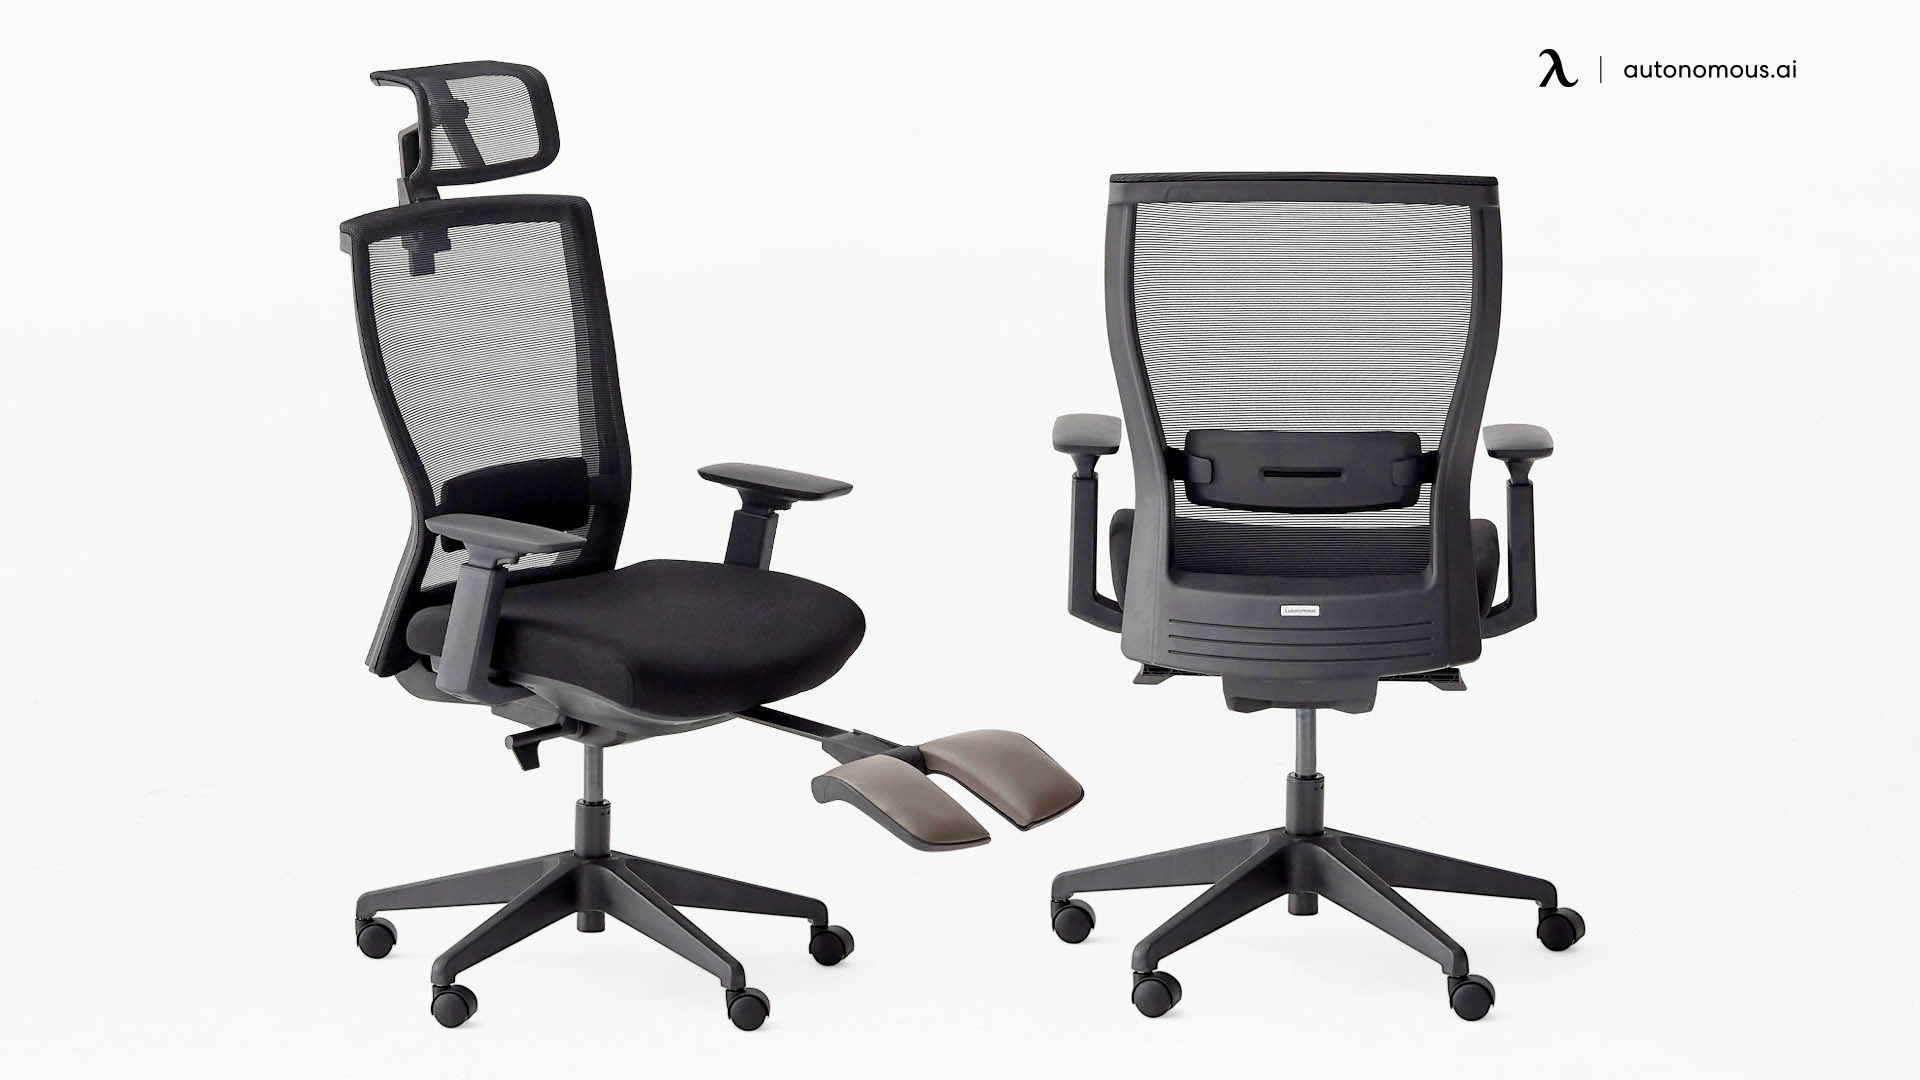 ErgoChair Recline mesh bottom office chair